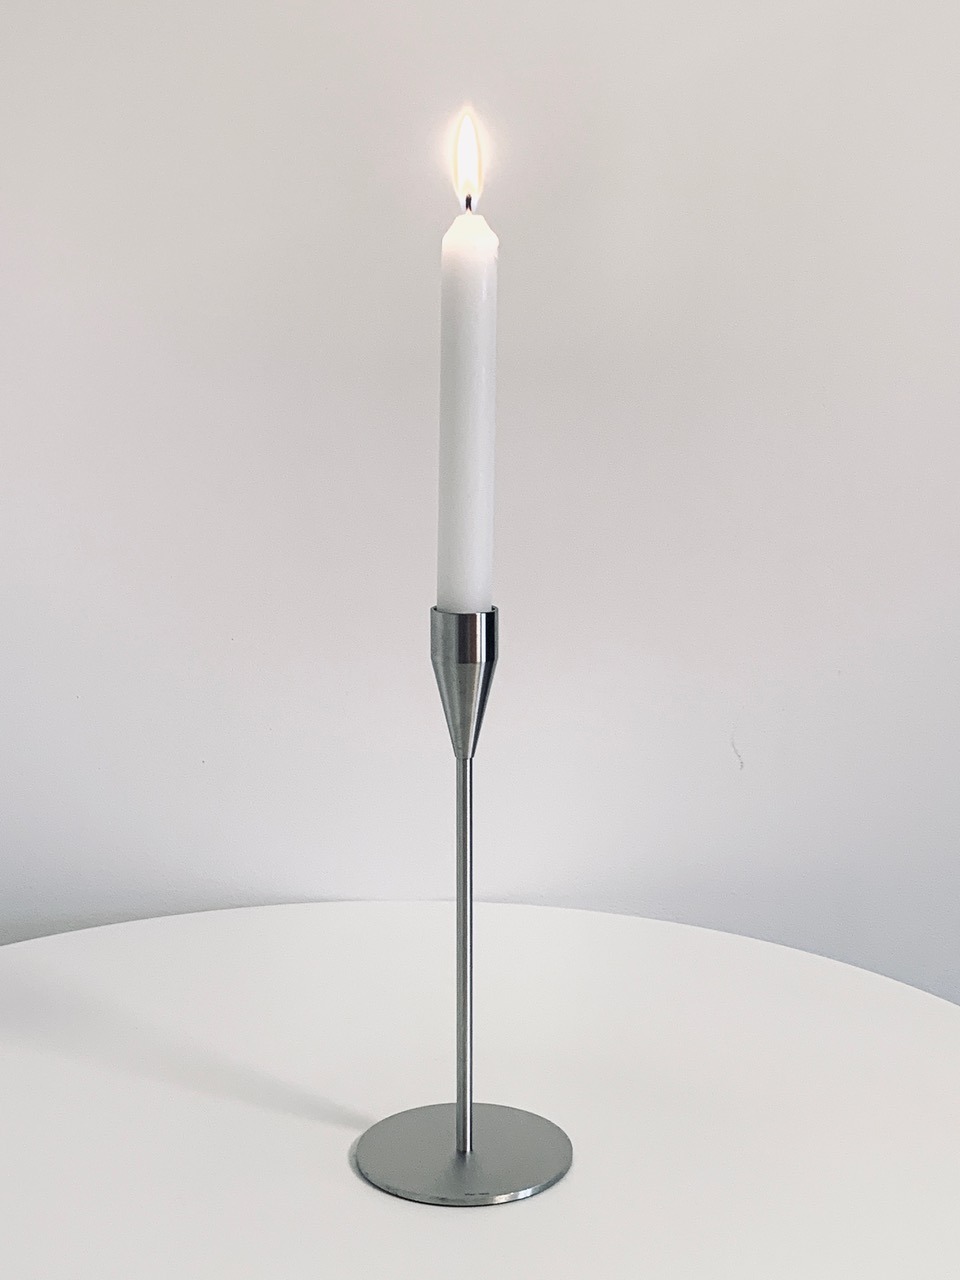 Immagine del candelabro Piet Hein Venus offerto in questa pubblicità